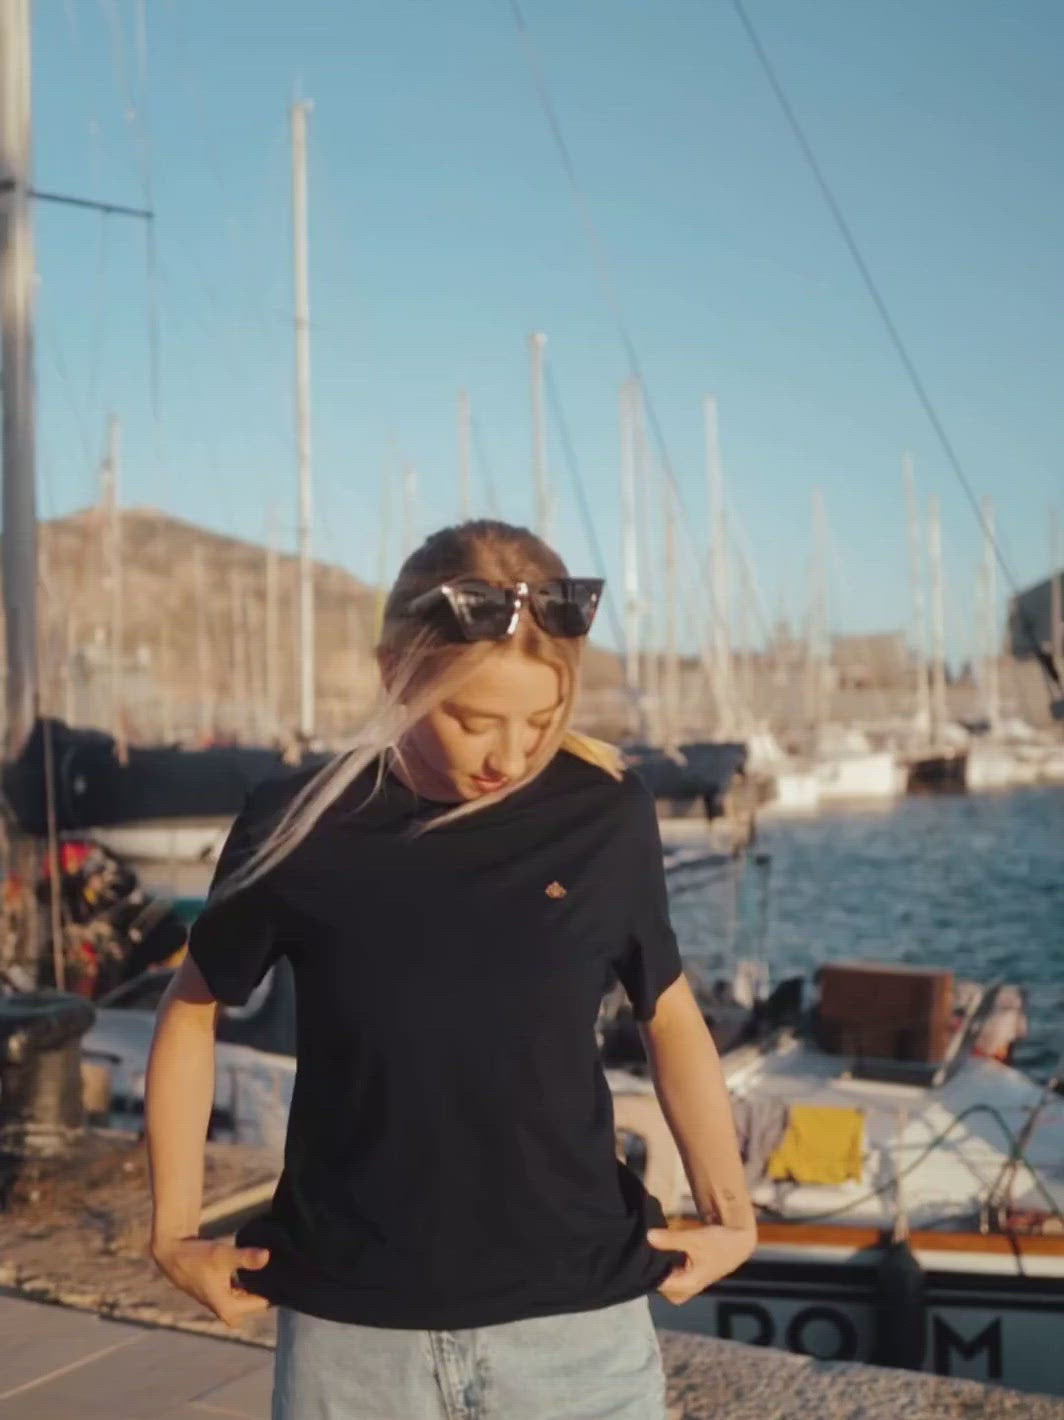 Cape dámské tričko z biobavlny s kulatým výstřihem námořní modré žena u lodi s modrým nebem při západu slunce